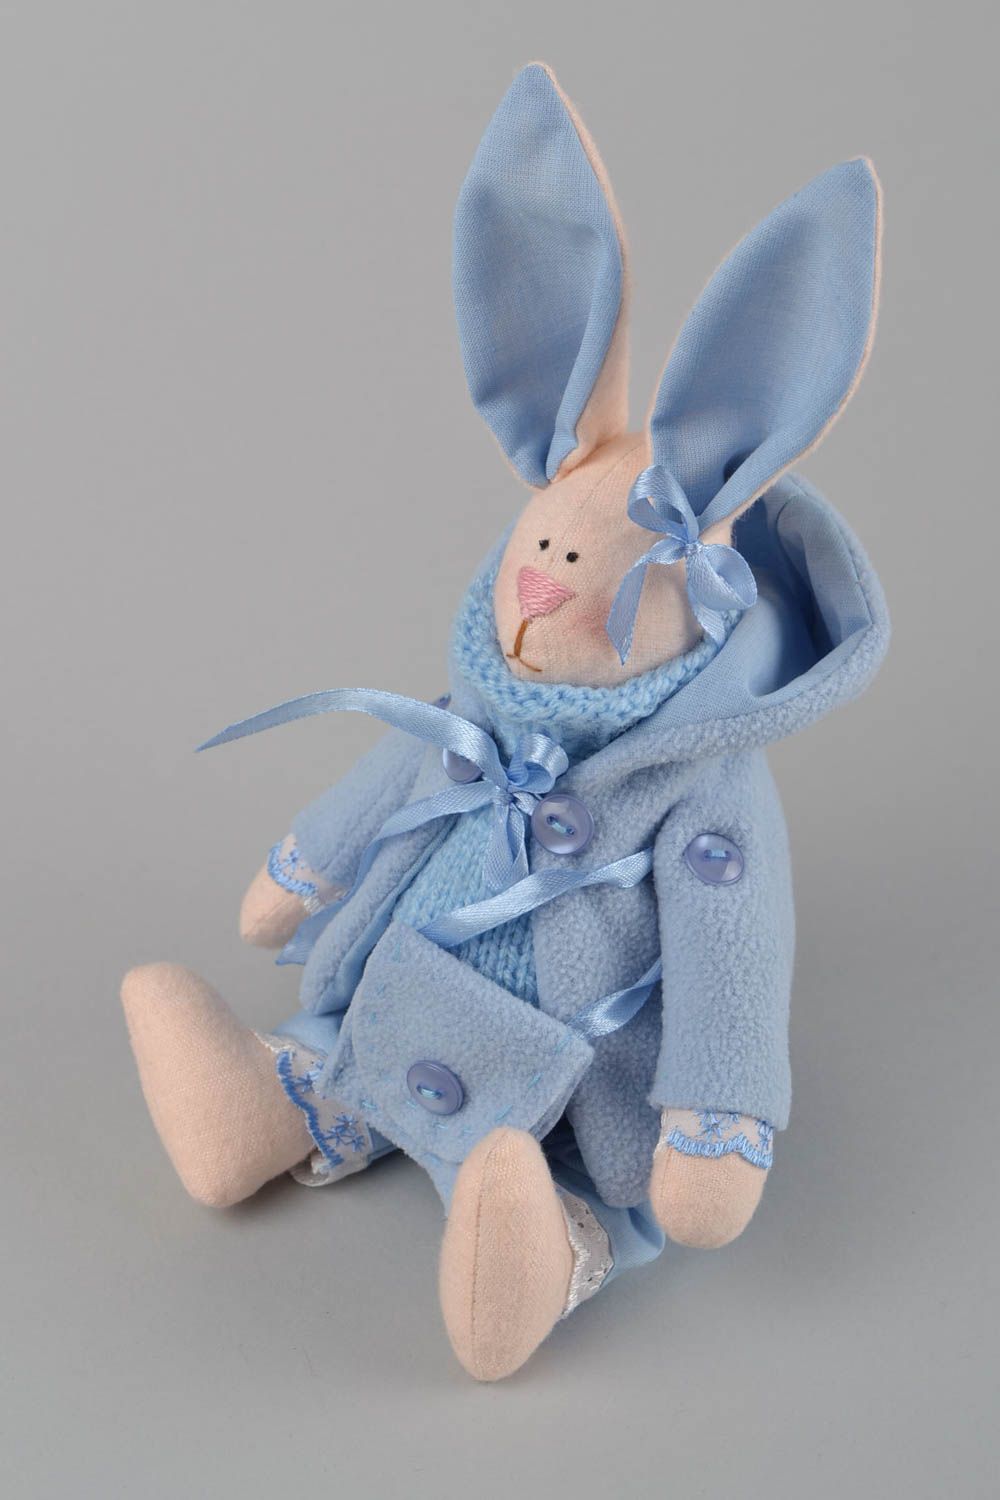 Textil Kuscheltier Hase im blauen Anzug handmade Schmuck für Haus Dekor  foto 1